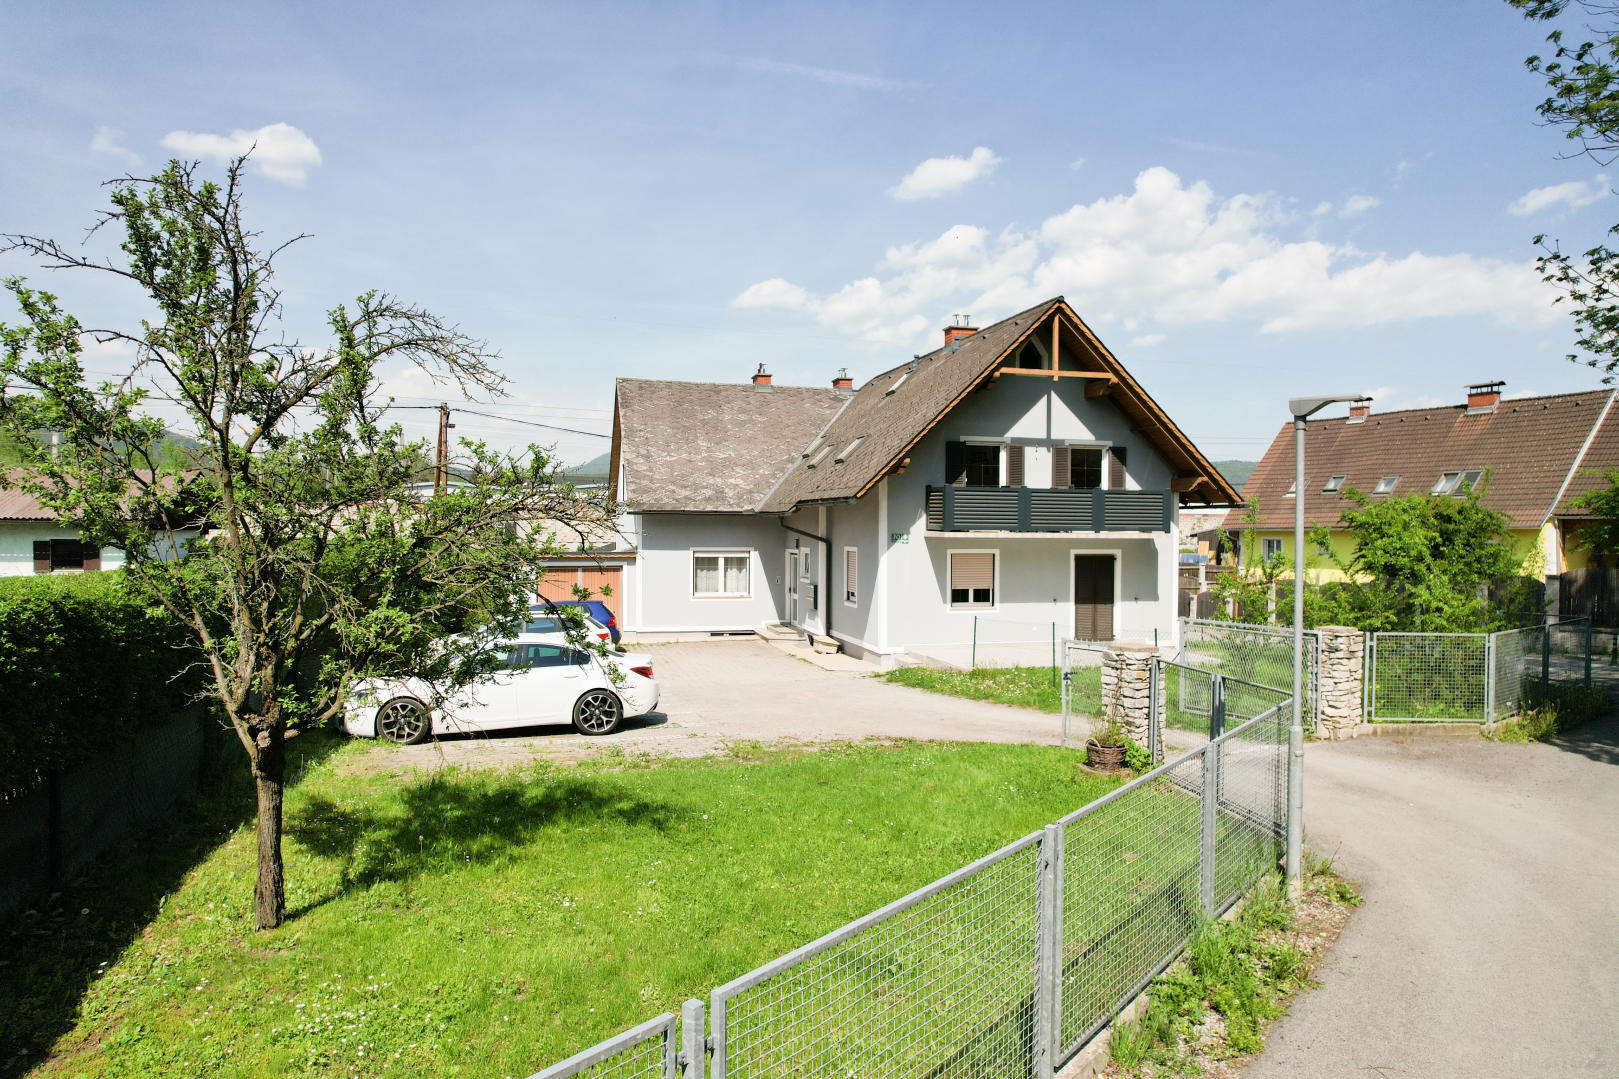 Zinshaus/Renditeobjekt/Gewerbeobjekt zu kaufen: Judendorfer Straße 70, 8112 Gratwein - Zinshaus Gratwein - Judendorf (2)